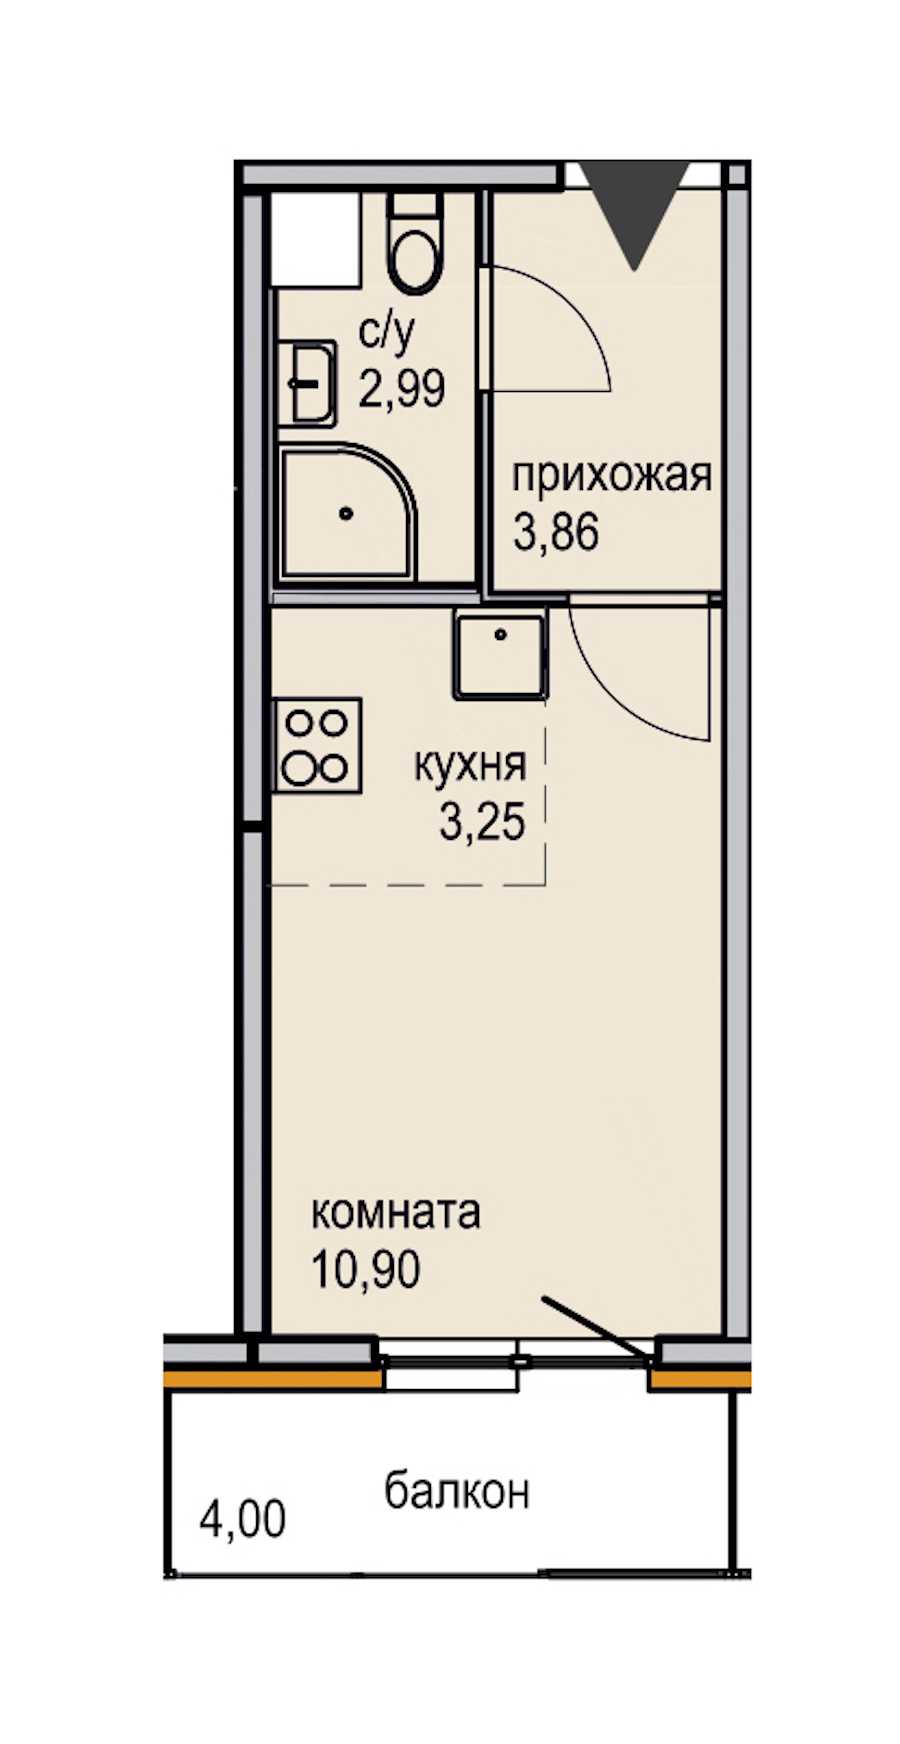 Студия в ЮИТ: площадь 21 м2 , этаж: 12 – купить в Санкт-Петербурге